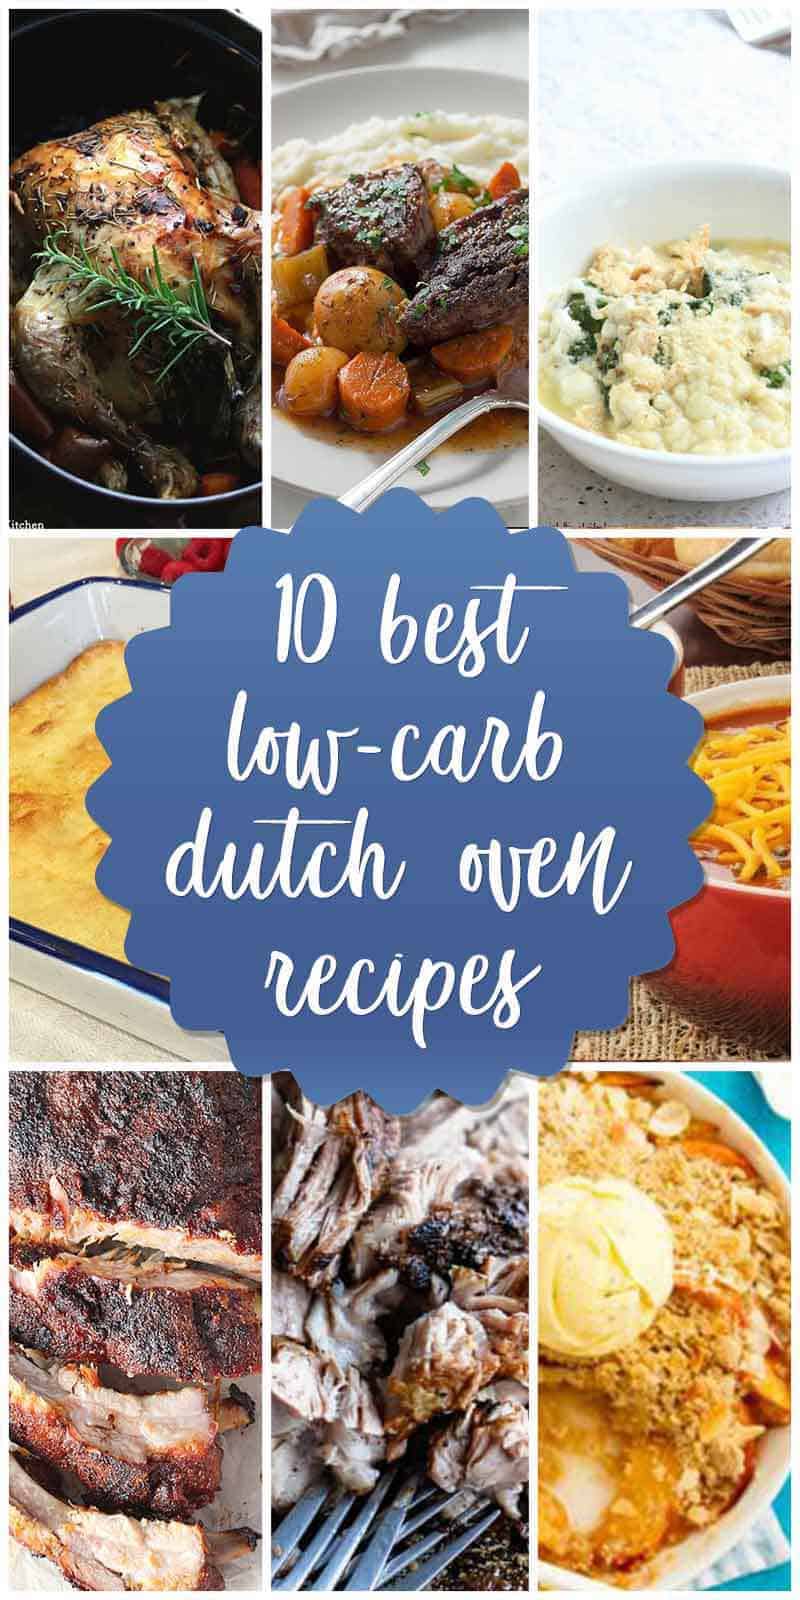 low carb dutch oven recipes